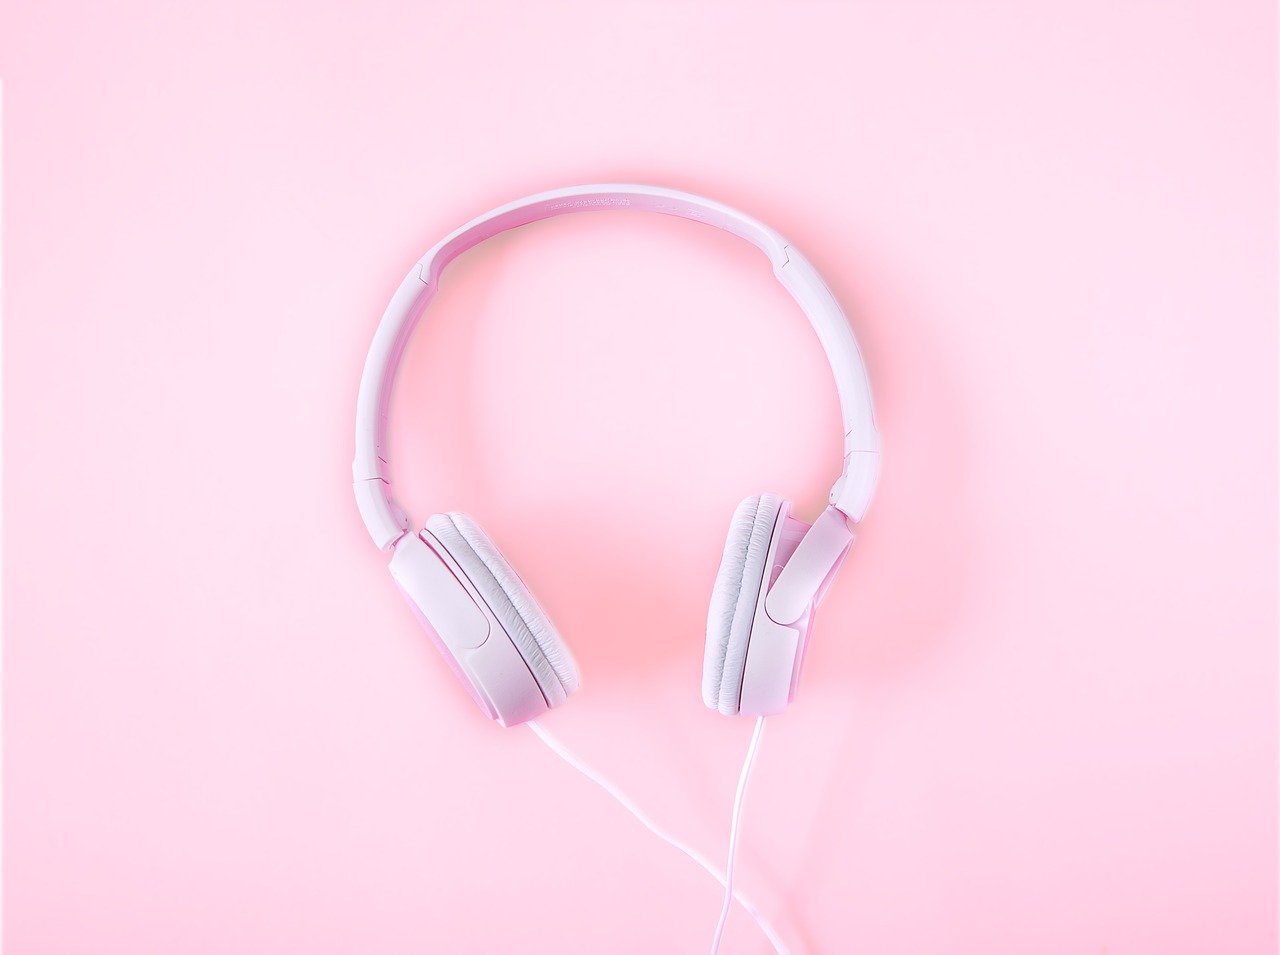 Muzyka a koncentracja: jak dźwięki mogą pomóc nam skupić się na zadaniu?